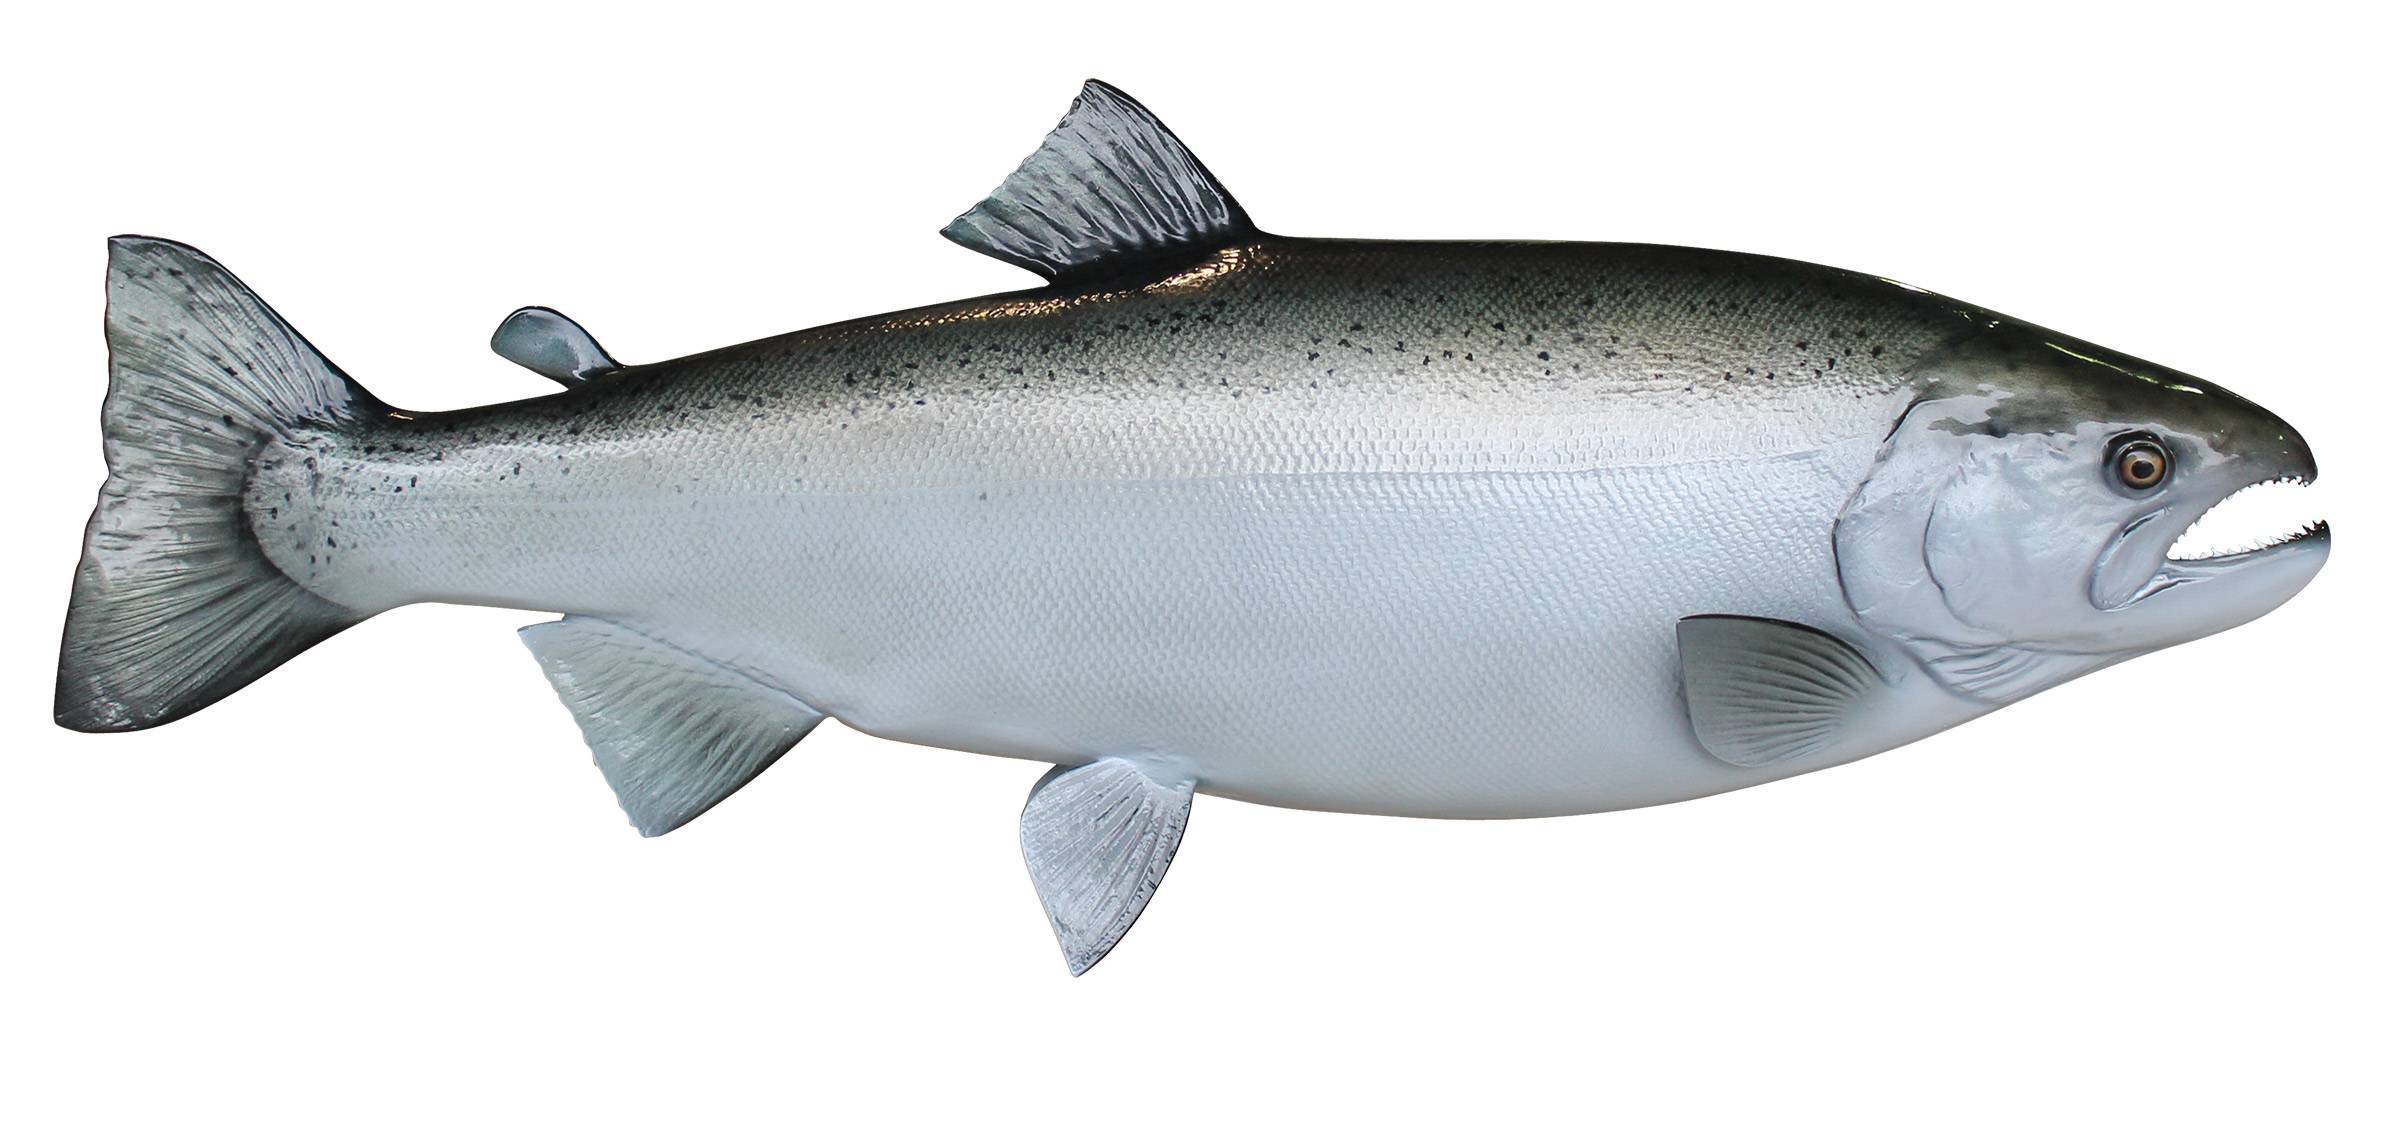 Основная информация о красной рыбе кижуч: где обитает, польза и вред, рецепты приготовления